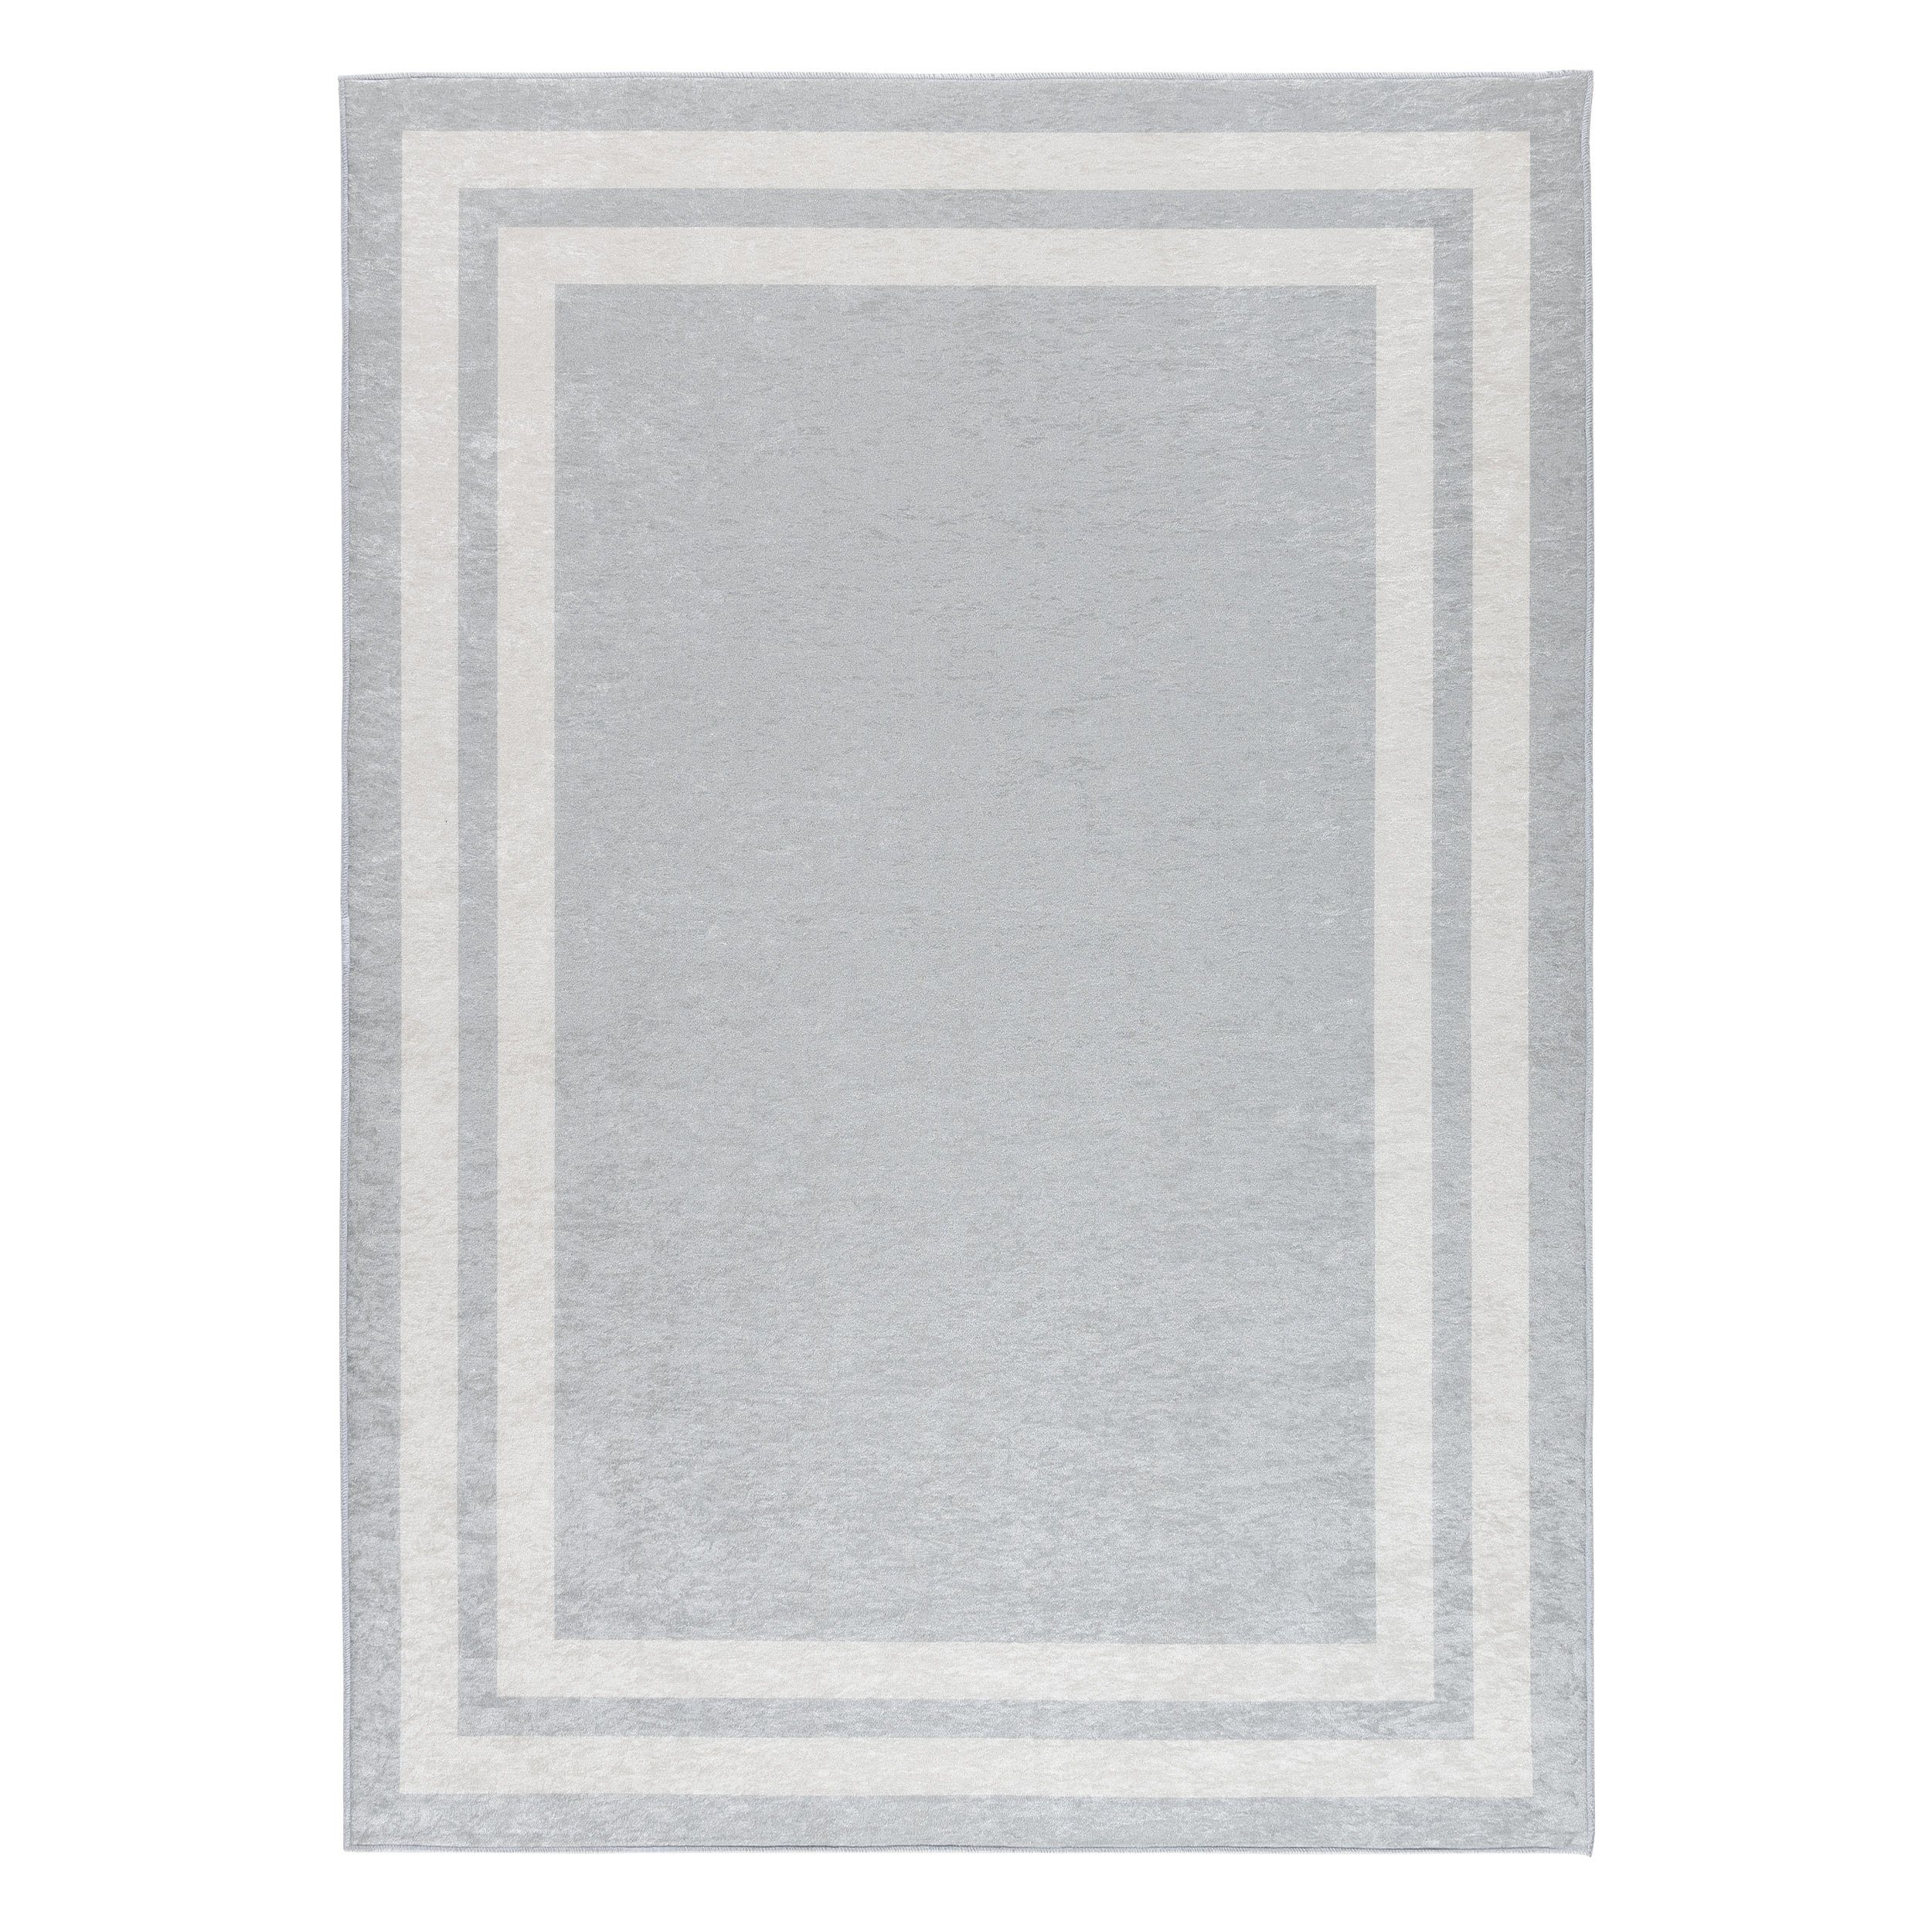 Teppich Teppich modern Design, grau-weiß, Sehrazat, Rechteckig, Höhe: 3 mm, mit Bordüre, Motiv: grau-weiß, glänzende Oberfläche, sehr schön